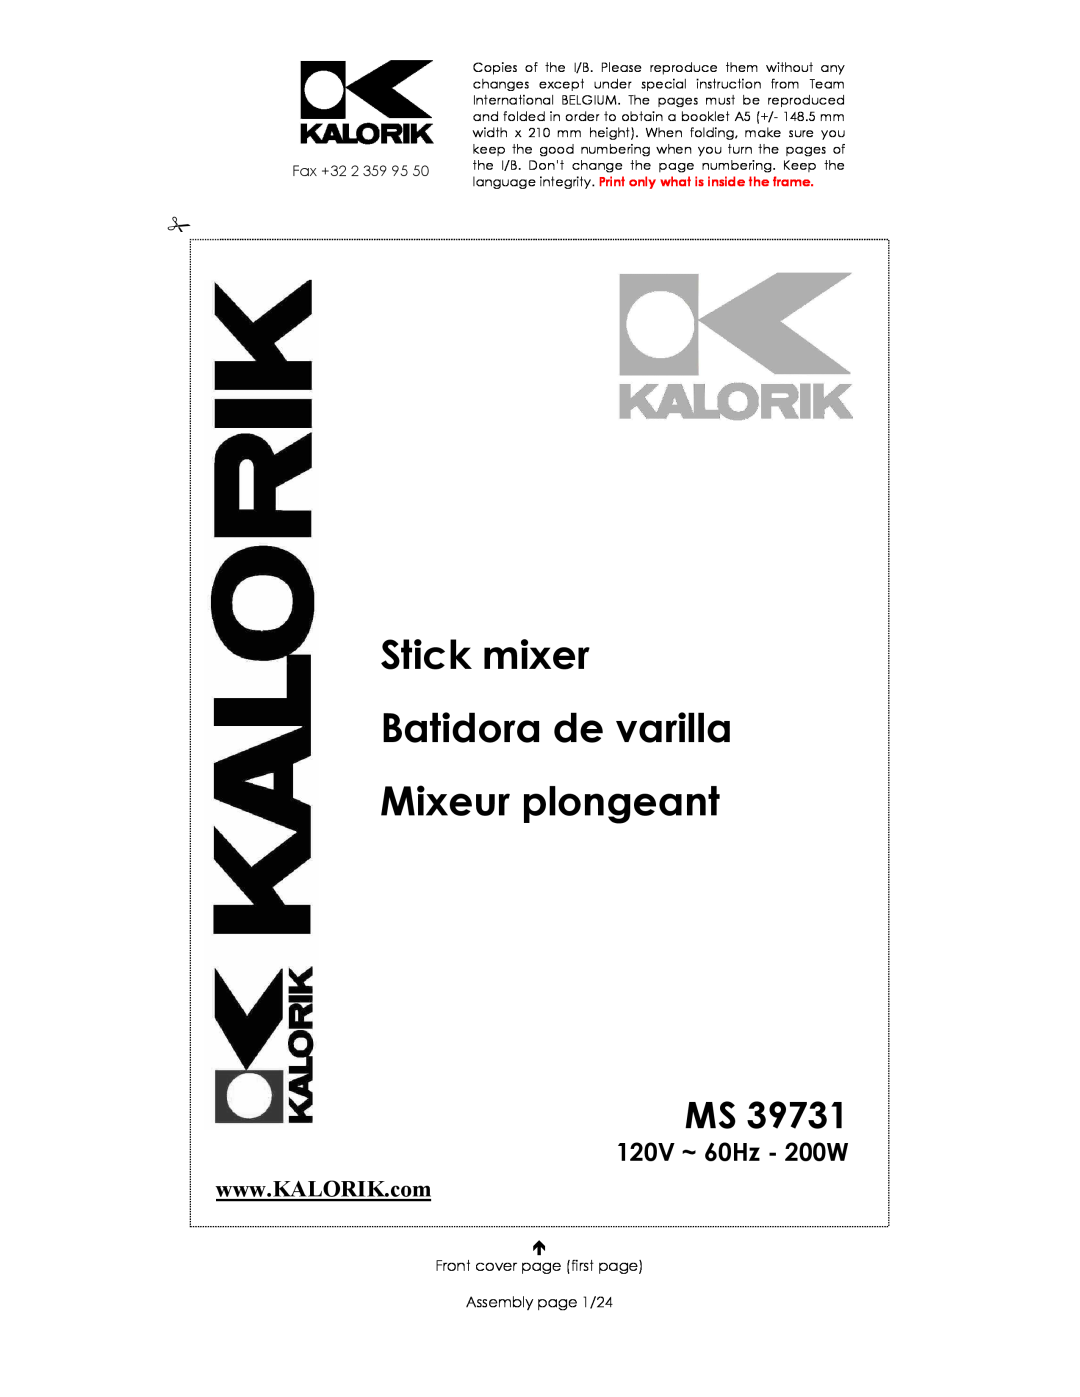 Kalorik MS 39731 manual Stick mixer Batidora de varilla Mixeur plongeant, 120V ~ 60Hz - 200W, Fax +32 